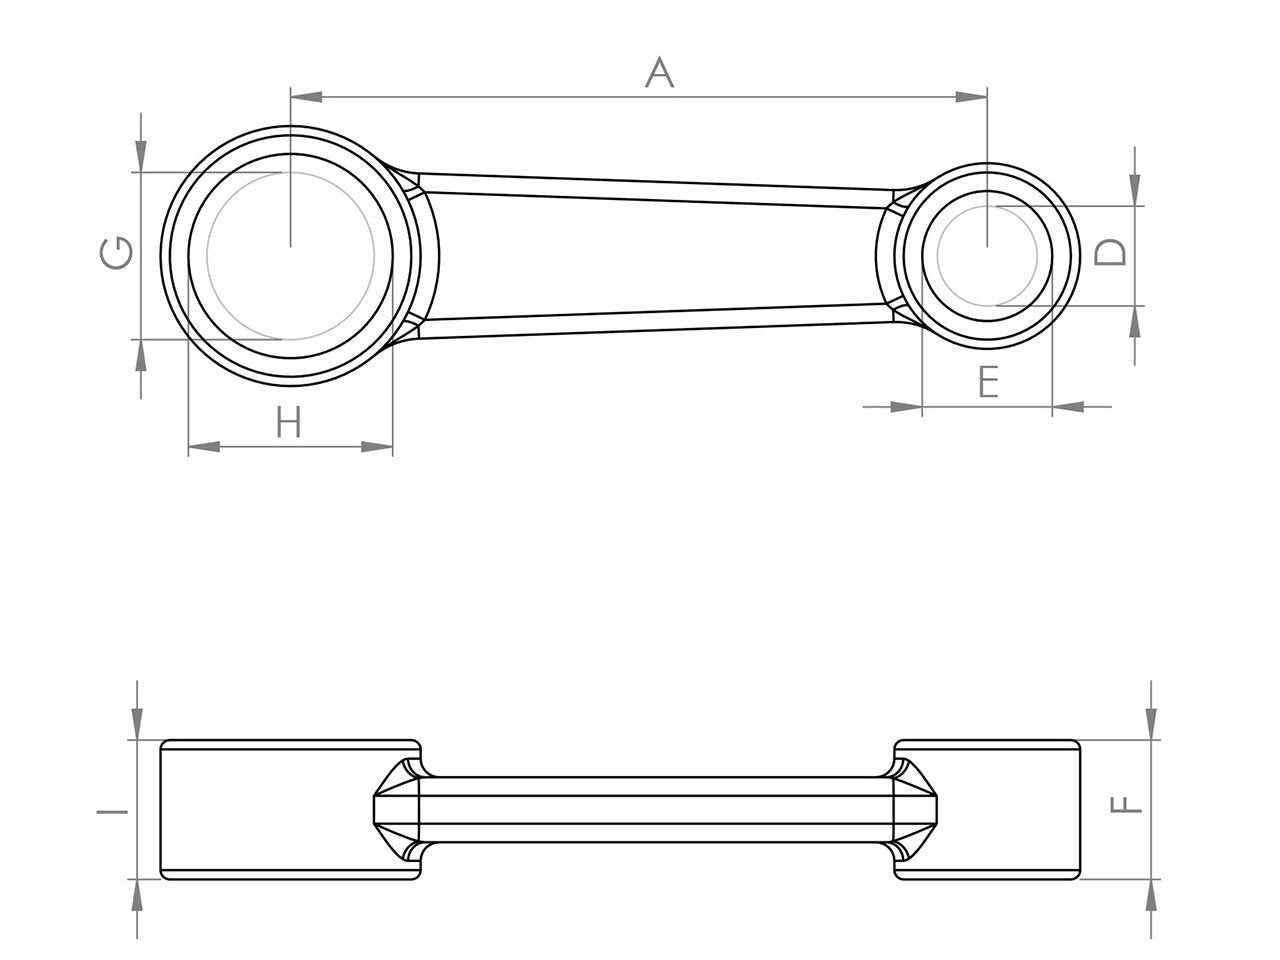 Zeichnung Barikit Pleuel für einen Yamaha Aerox Roller Motor mit Bemaßung.